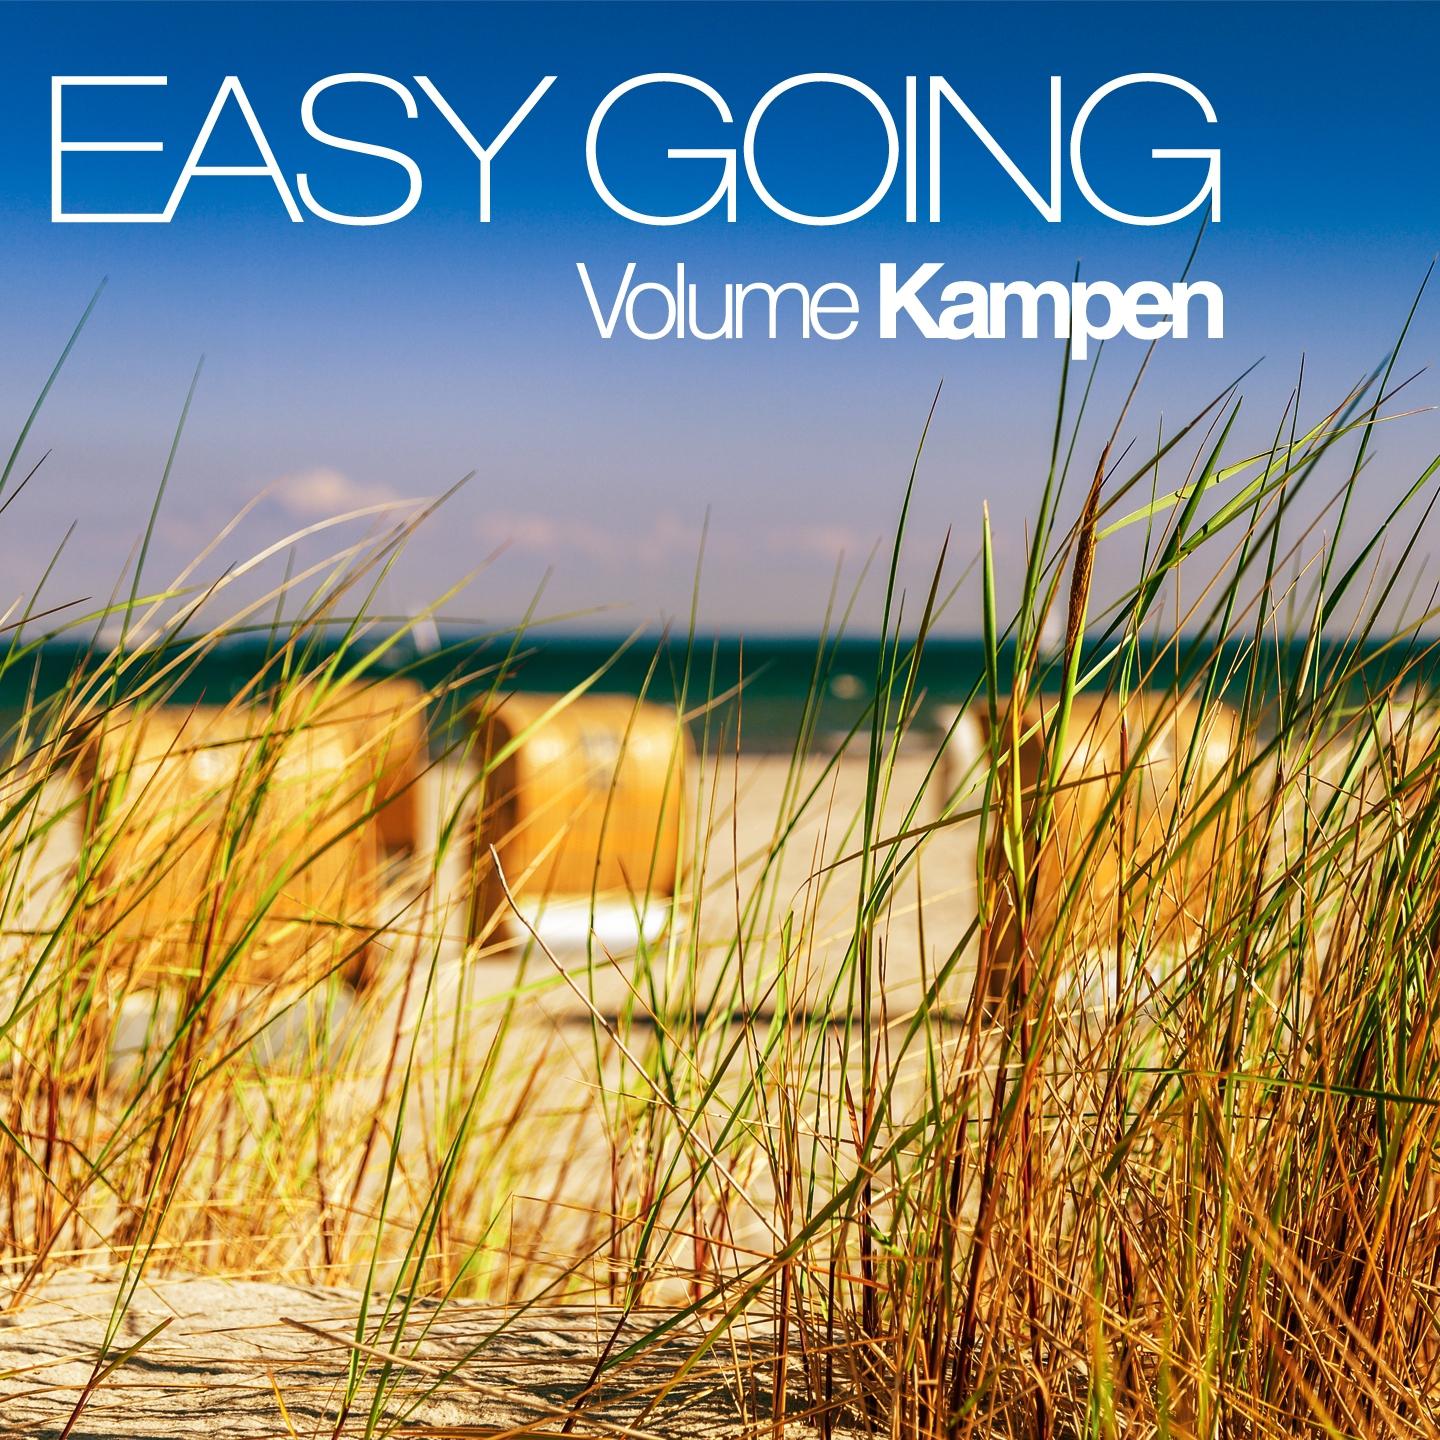 Easy Going -, Vol. Kampen